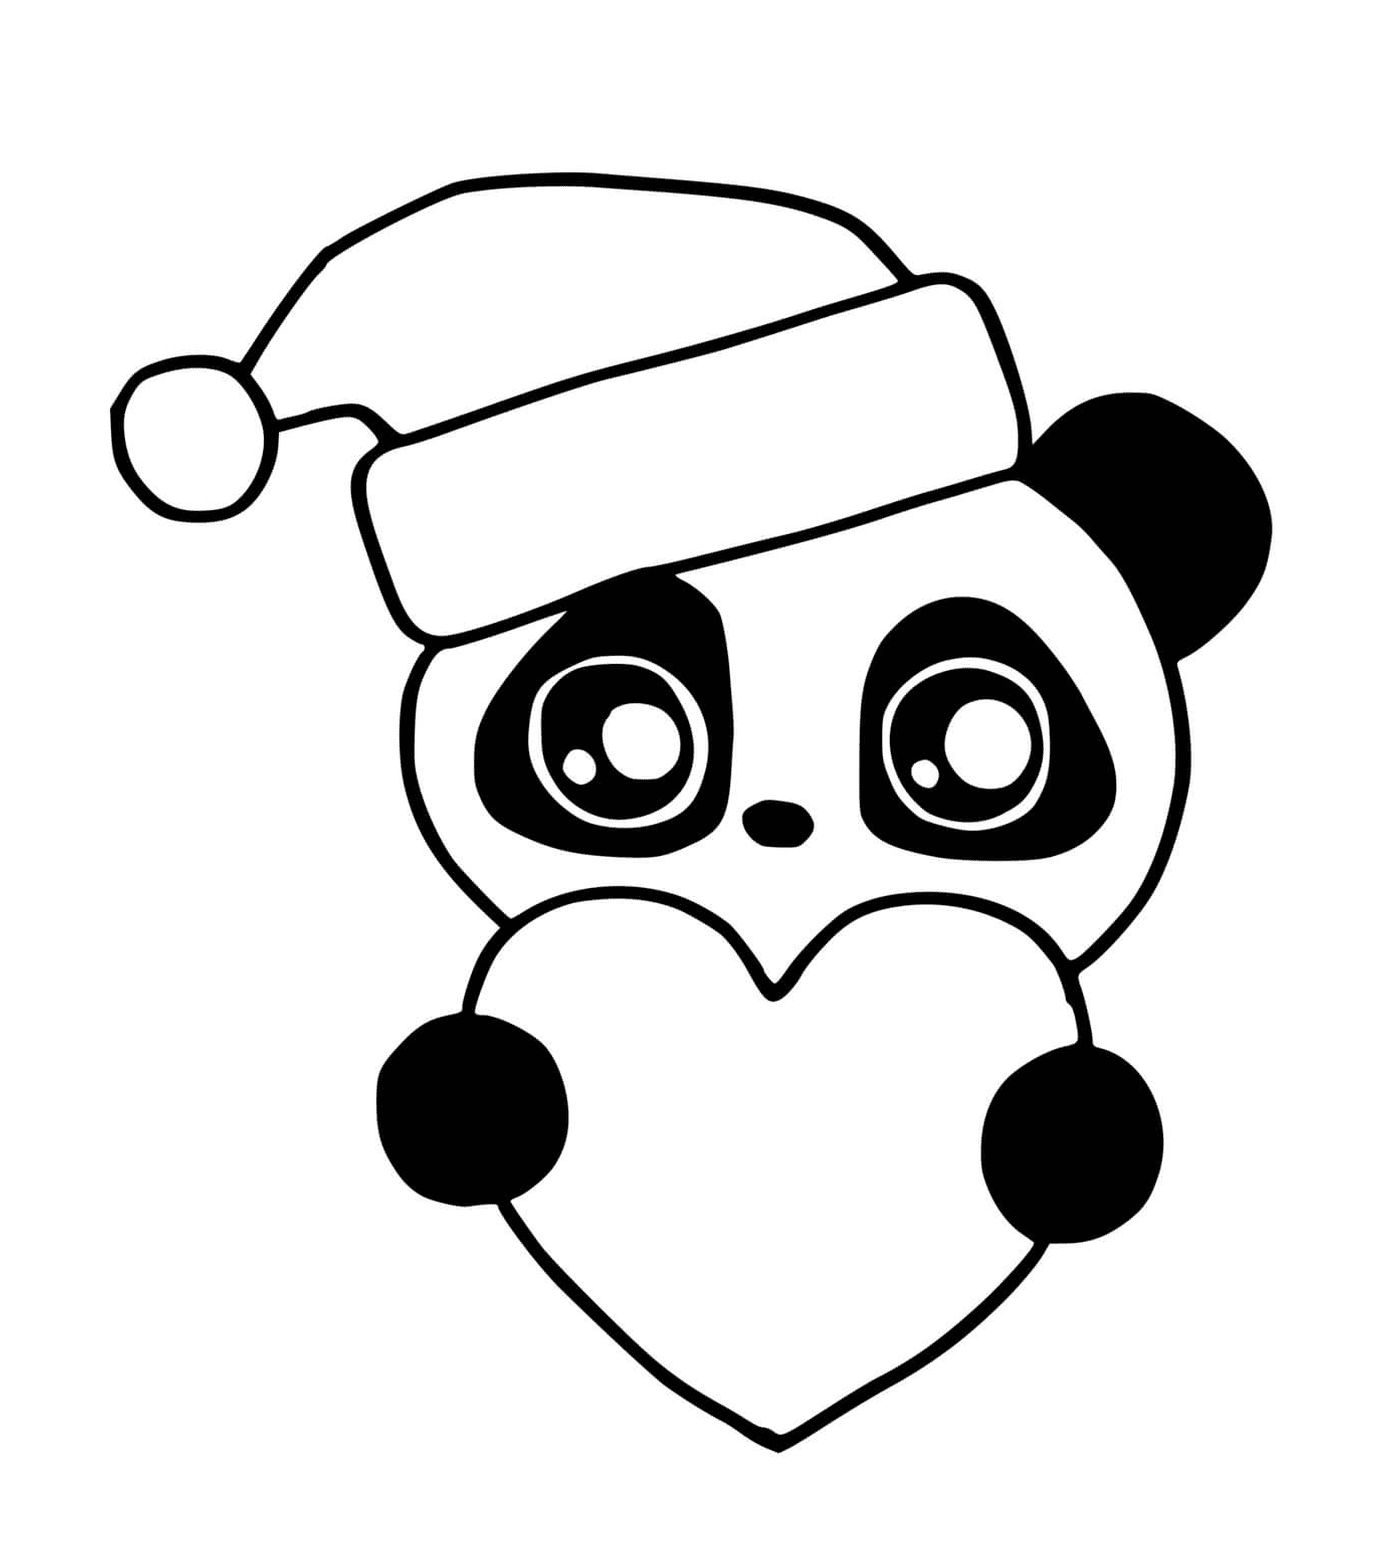  熊猫圣诞晚会 